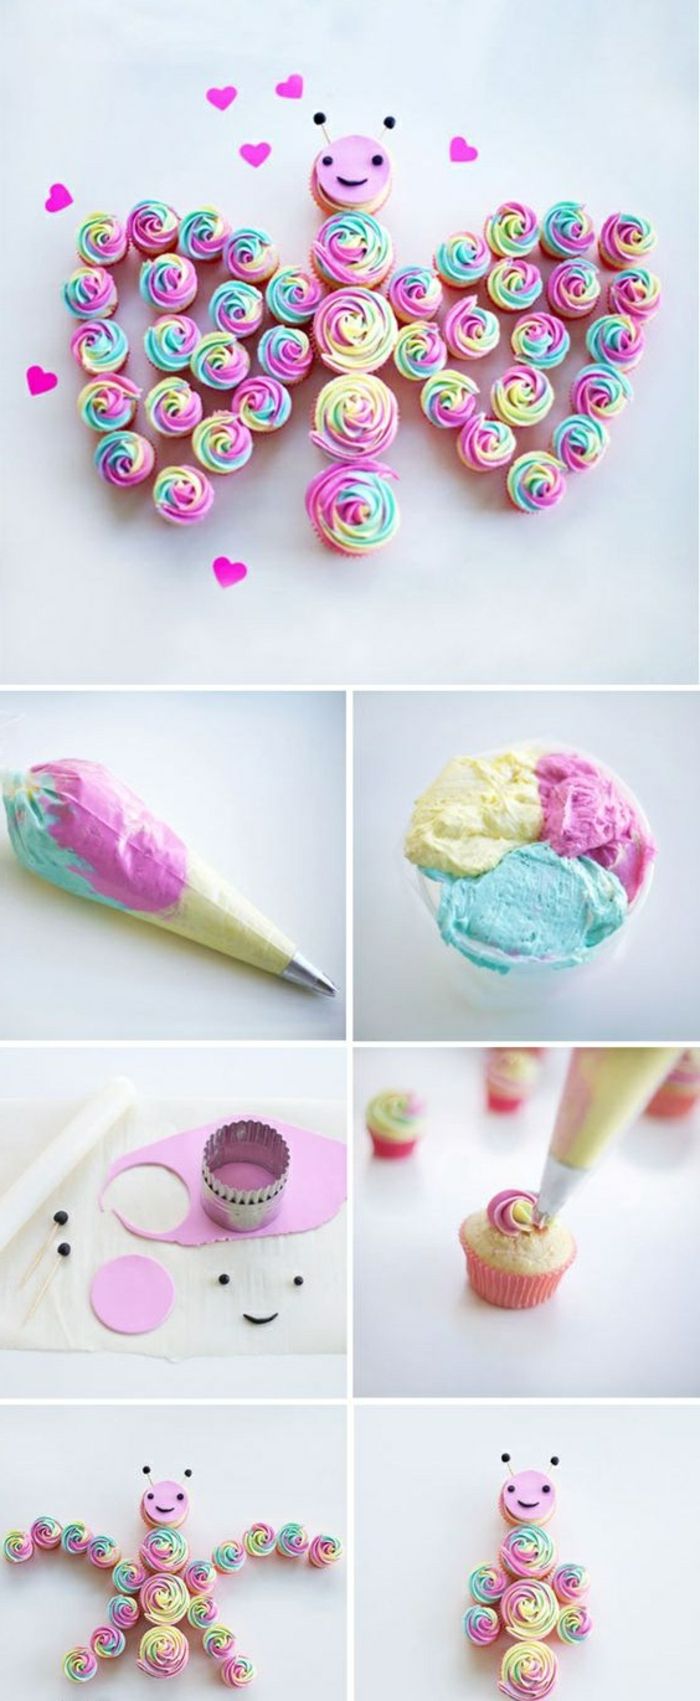 Cupcakes versieren met room van verschillende kleuren, vlinder